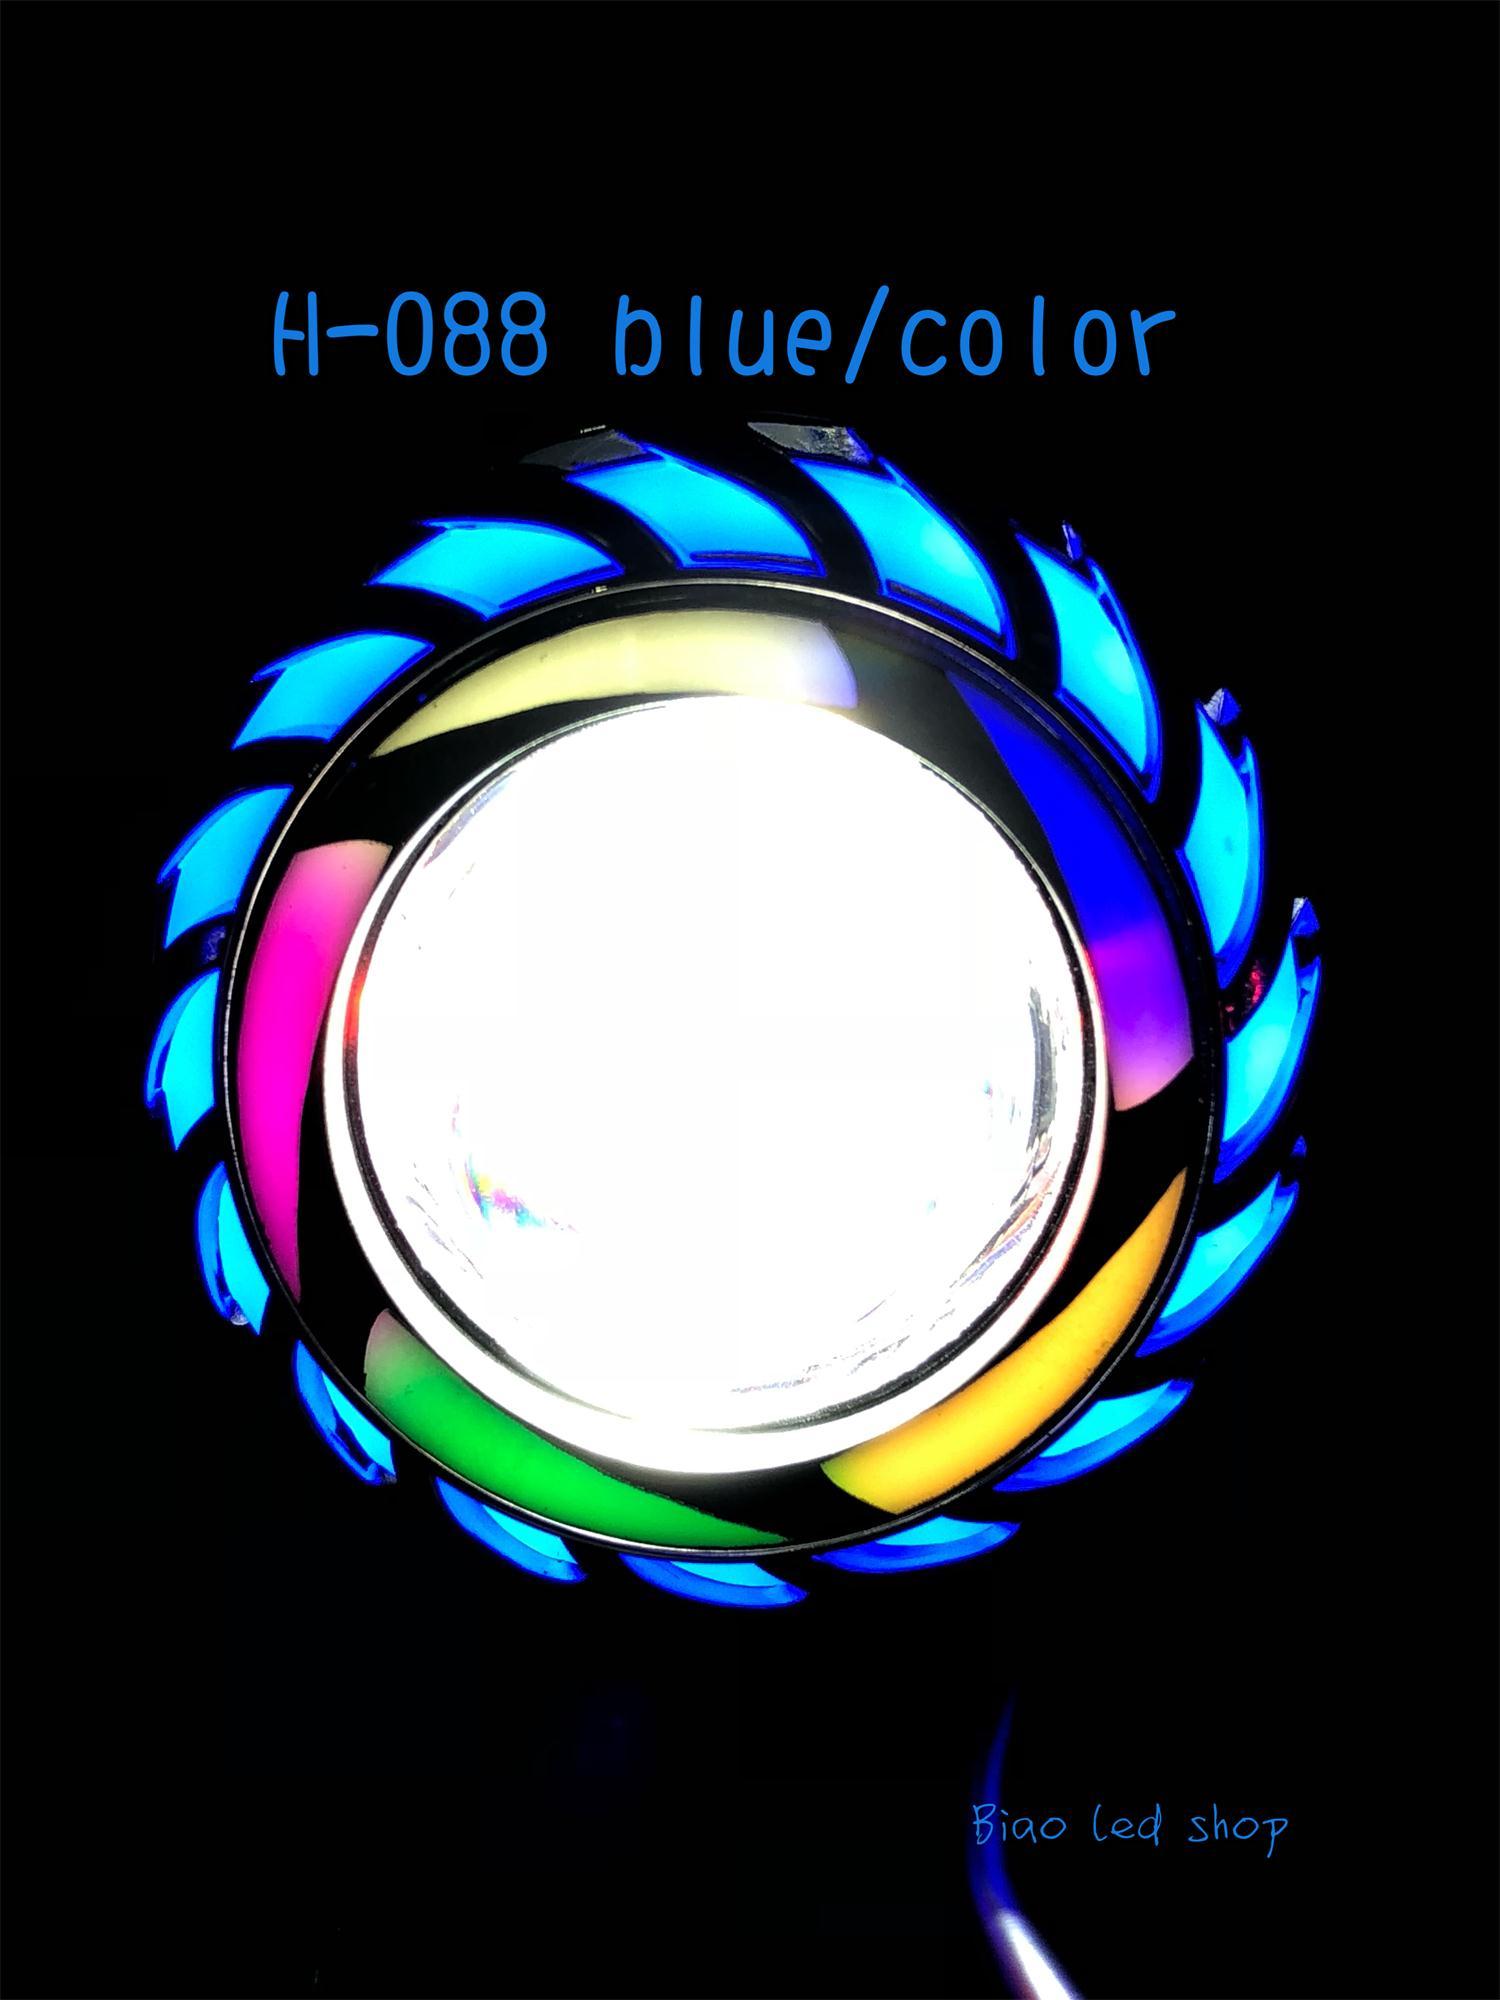 ไฟโปรเจคเตอร์Motorcycle LED H-088 blue/color